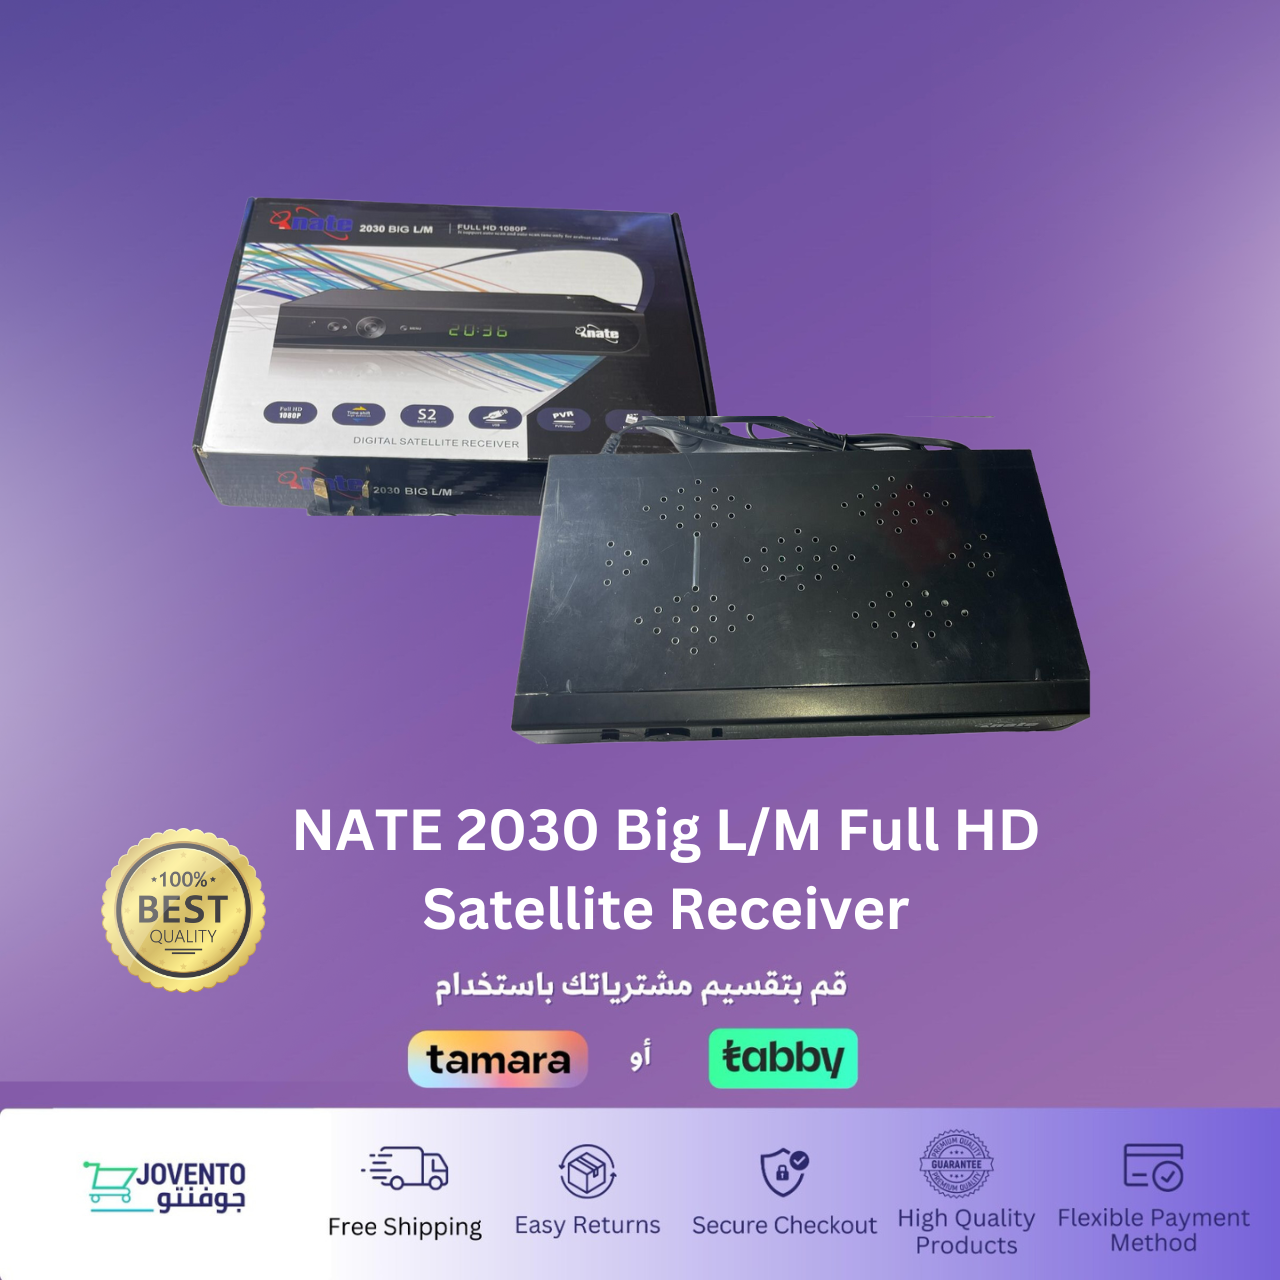 NATE 2030 Big L/M Full HD Satellite Receiver